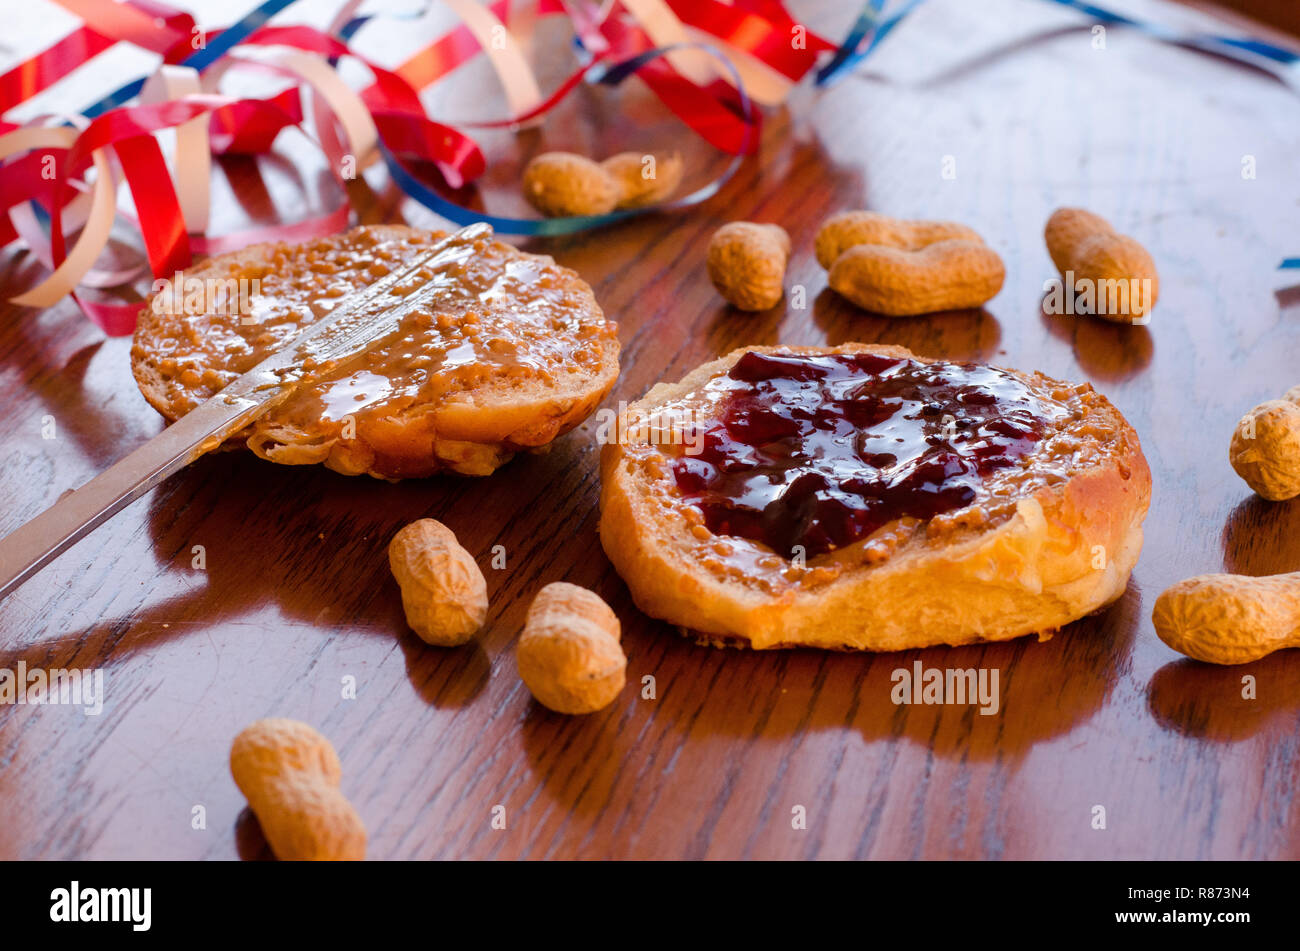 Burro di arachidi e jelly sandwich con tutta le arachidi sparsi sul tavolo con rosso, bianco e blu bande in background. Foto Stock